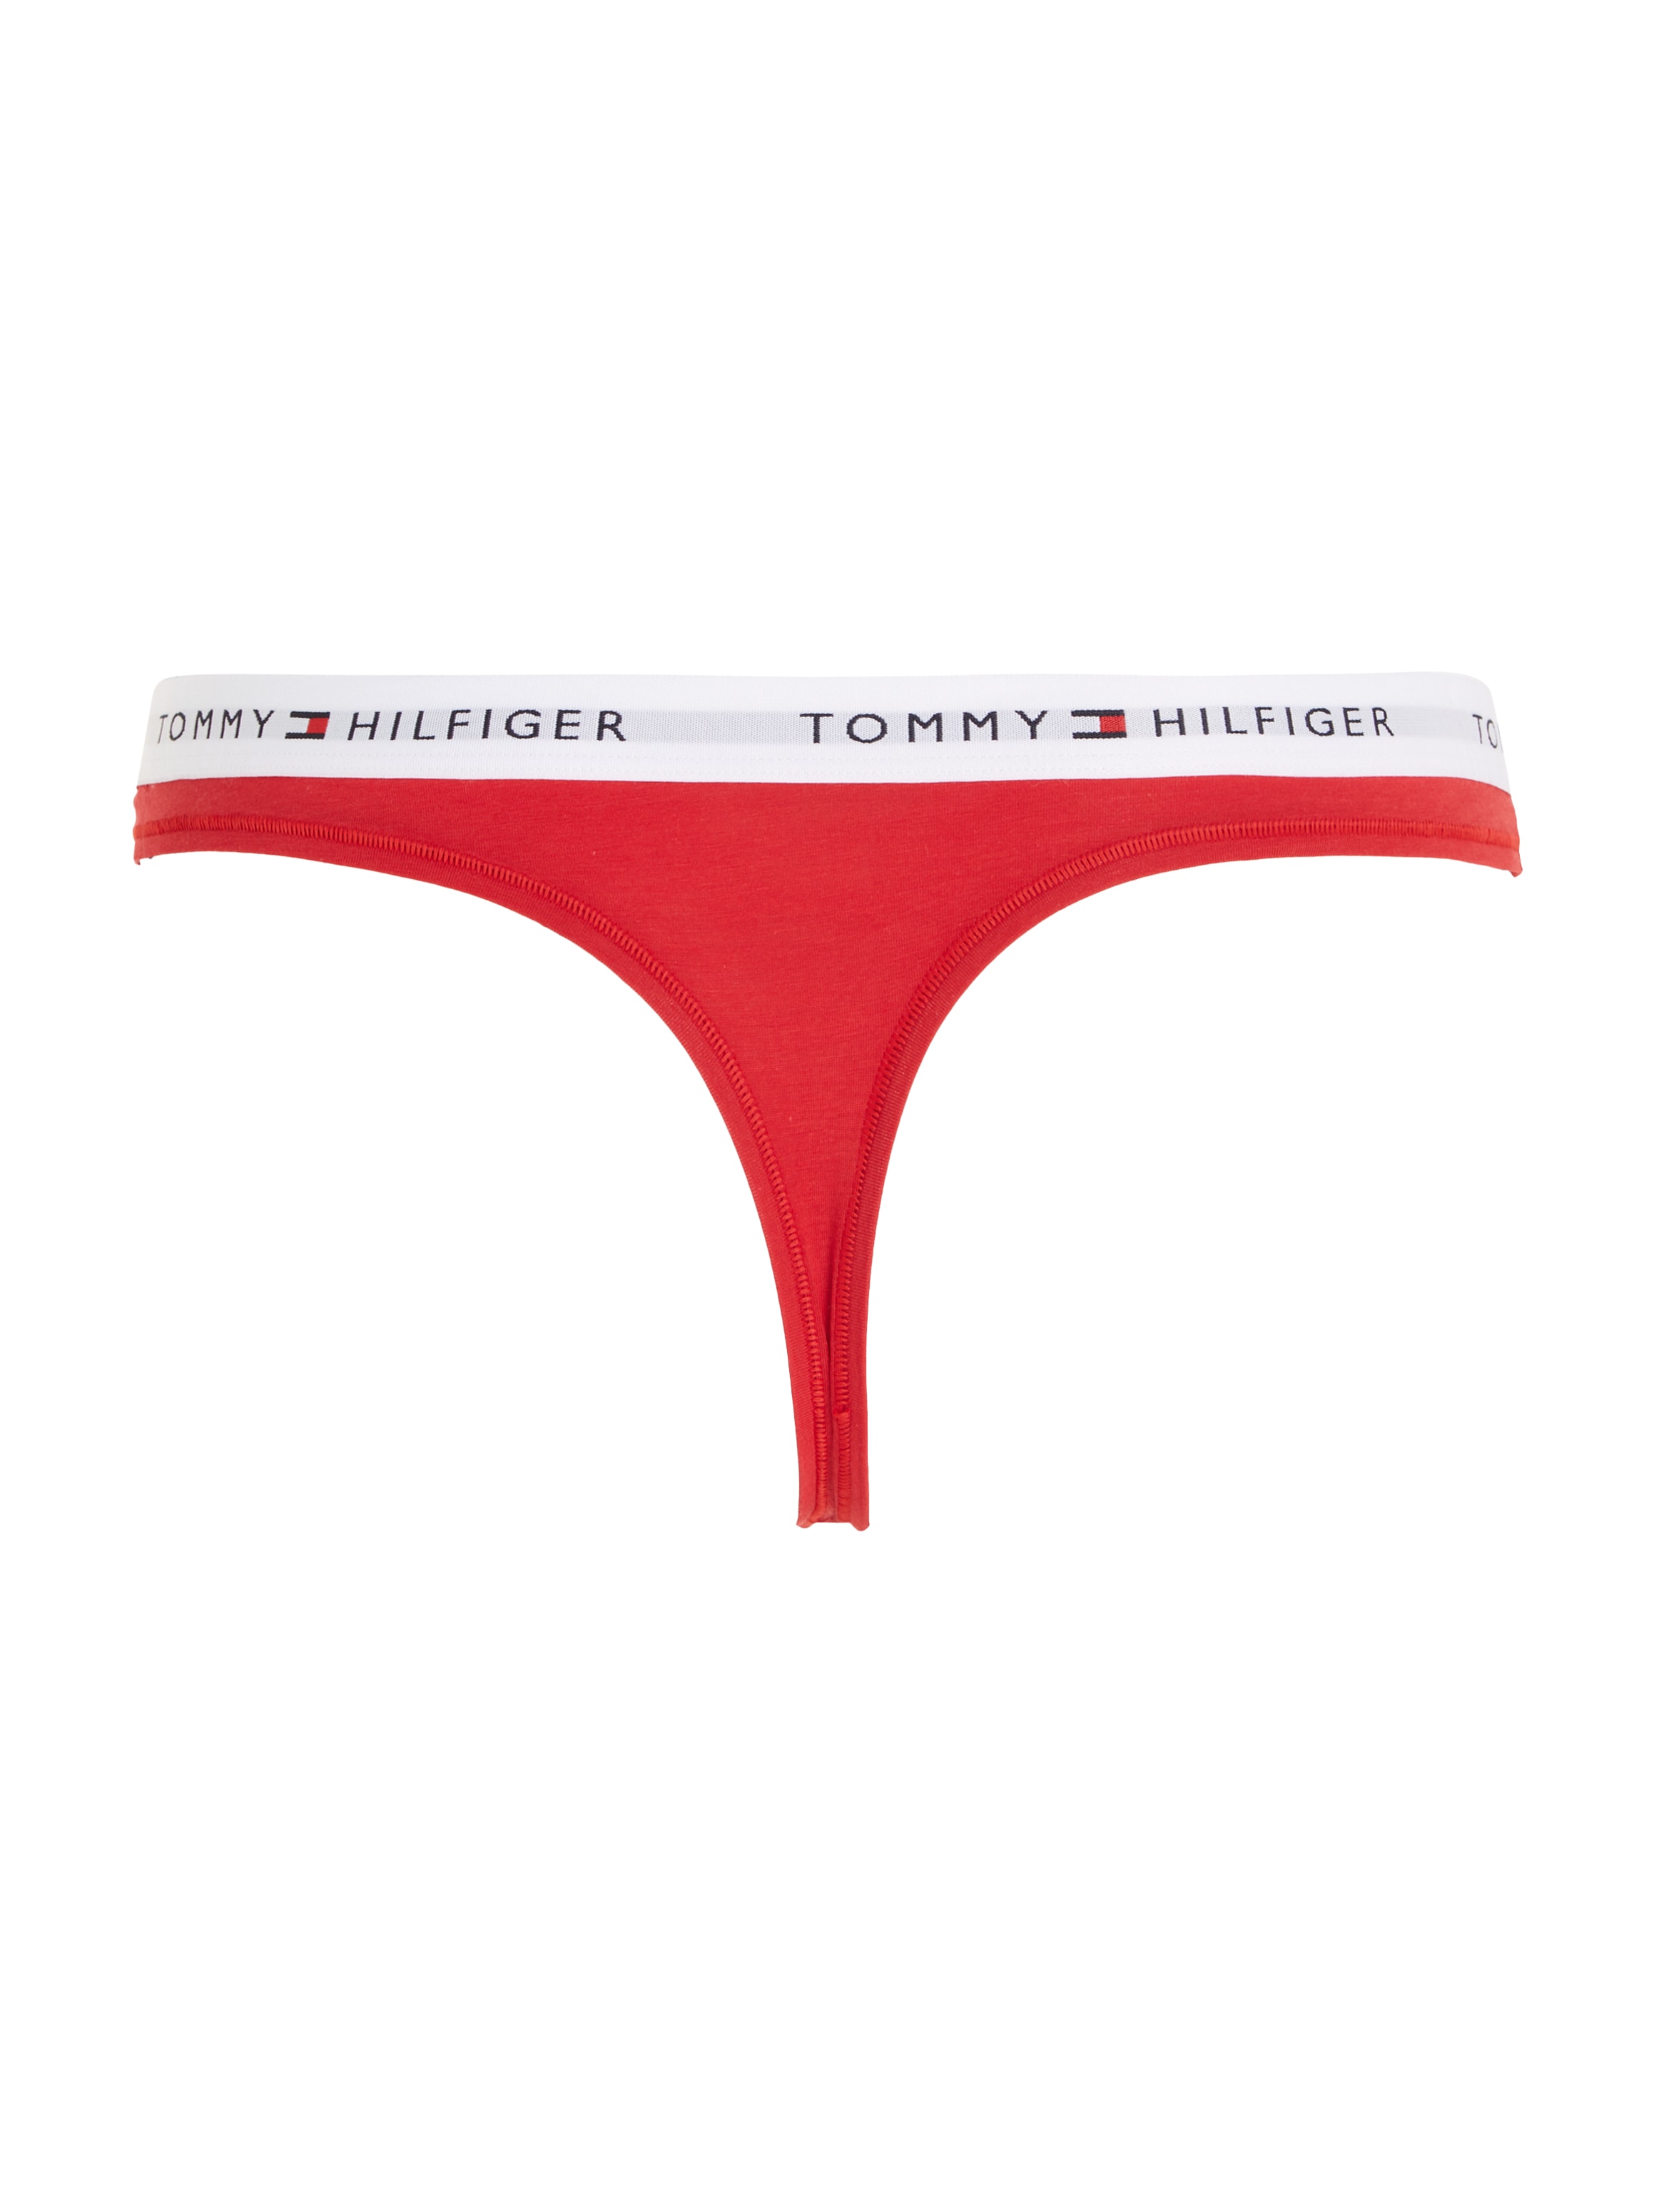 Tommy Hilfiger Underwear Bikinislip, & Taillenbund Wäsche auf bestellen mit Rechnung Logo auf dem